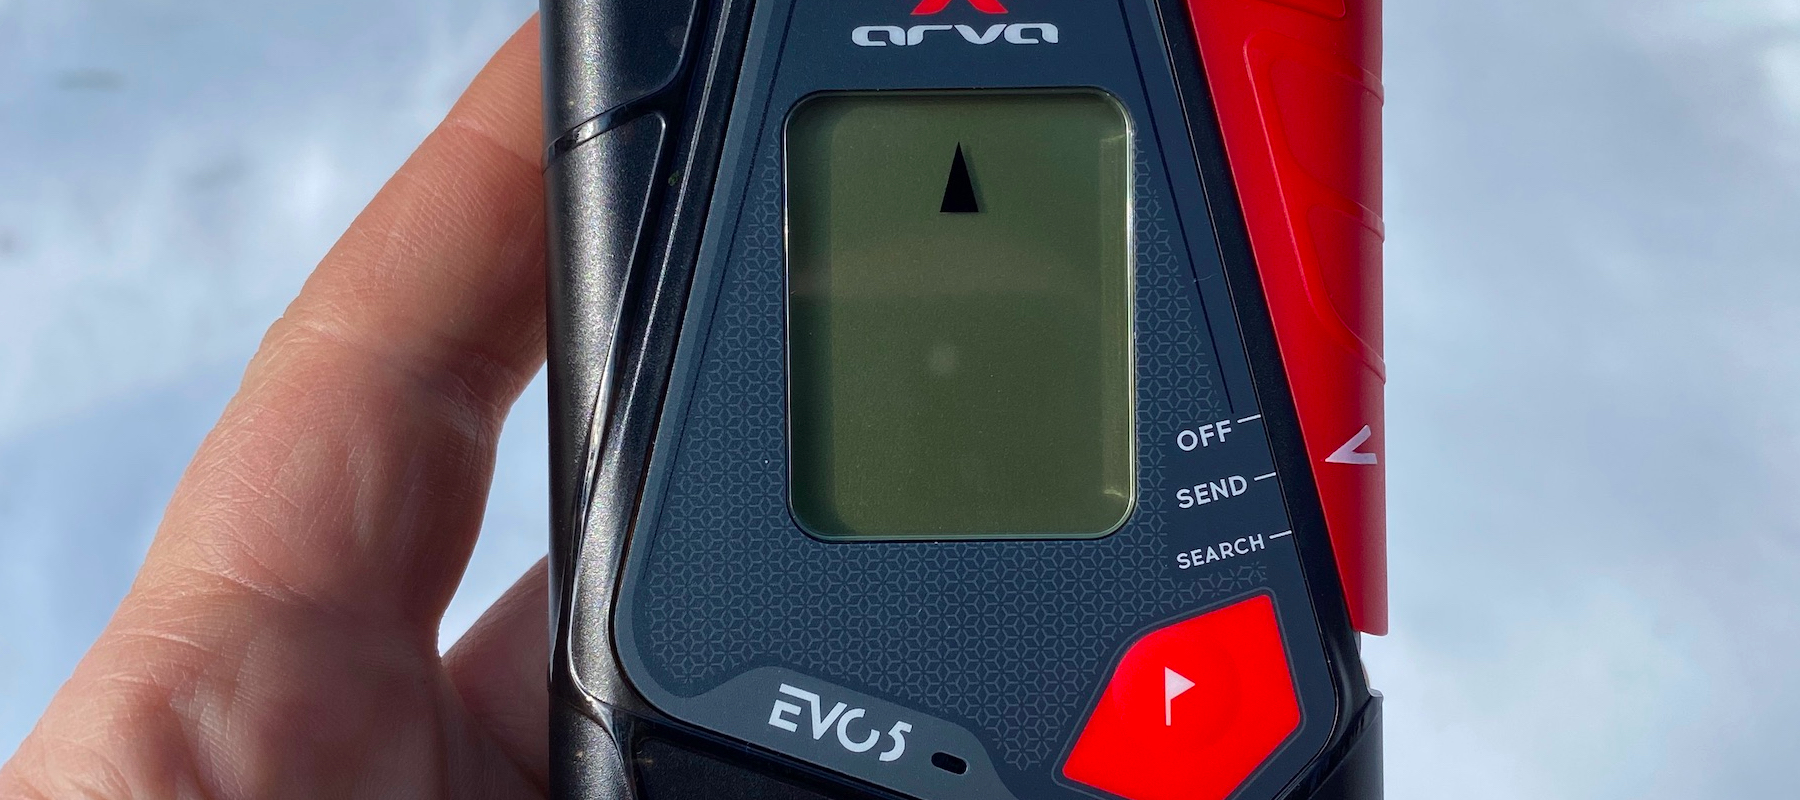 ARVA Evo5 avalanche beacon review | Advnture